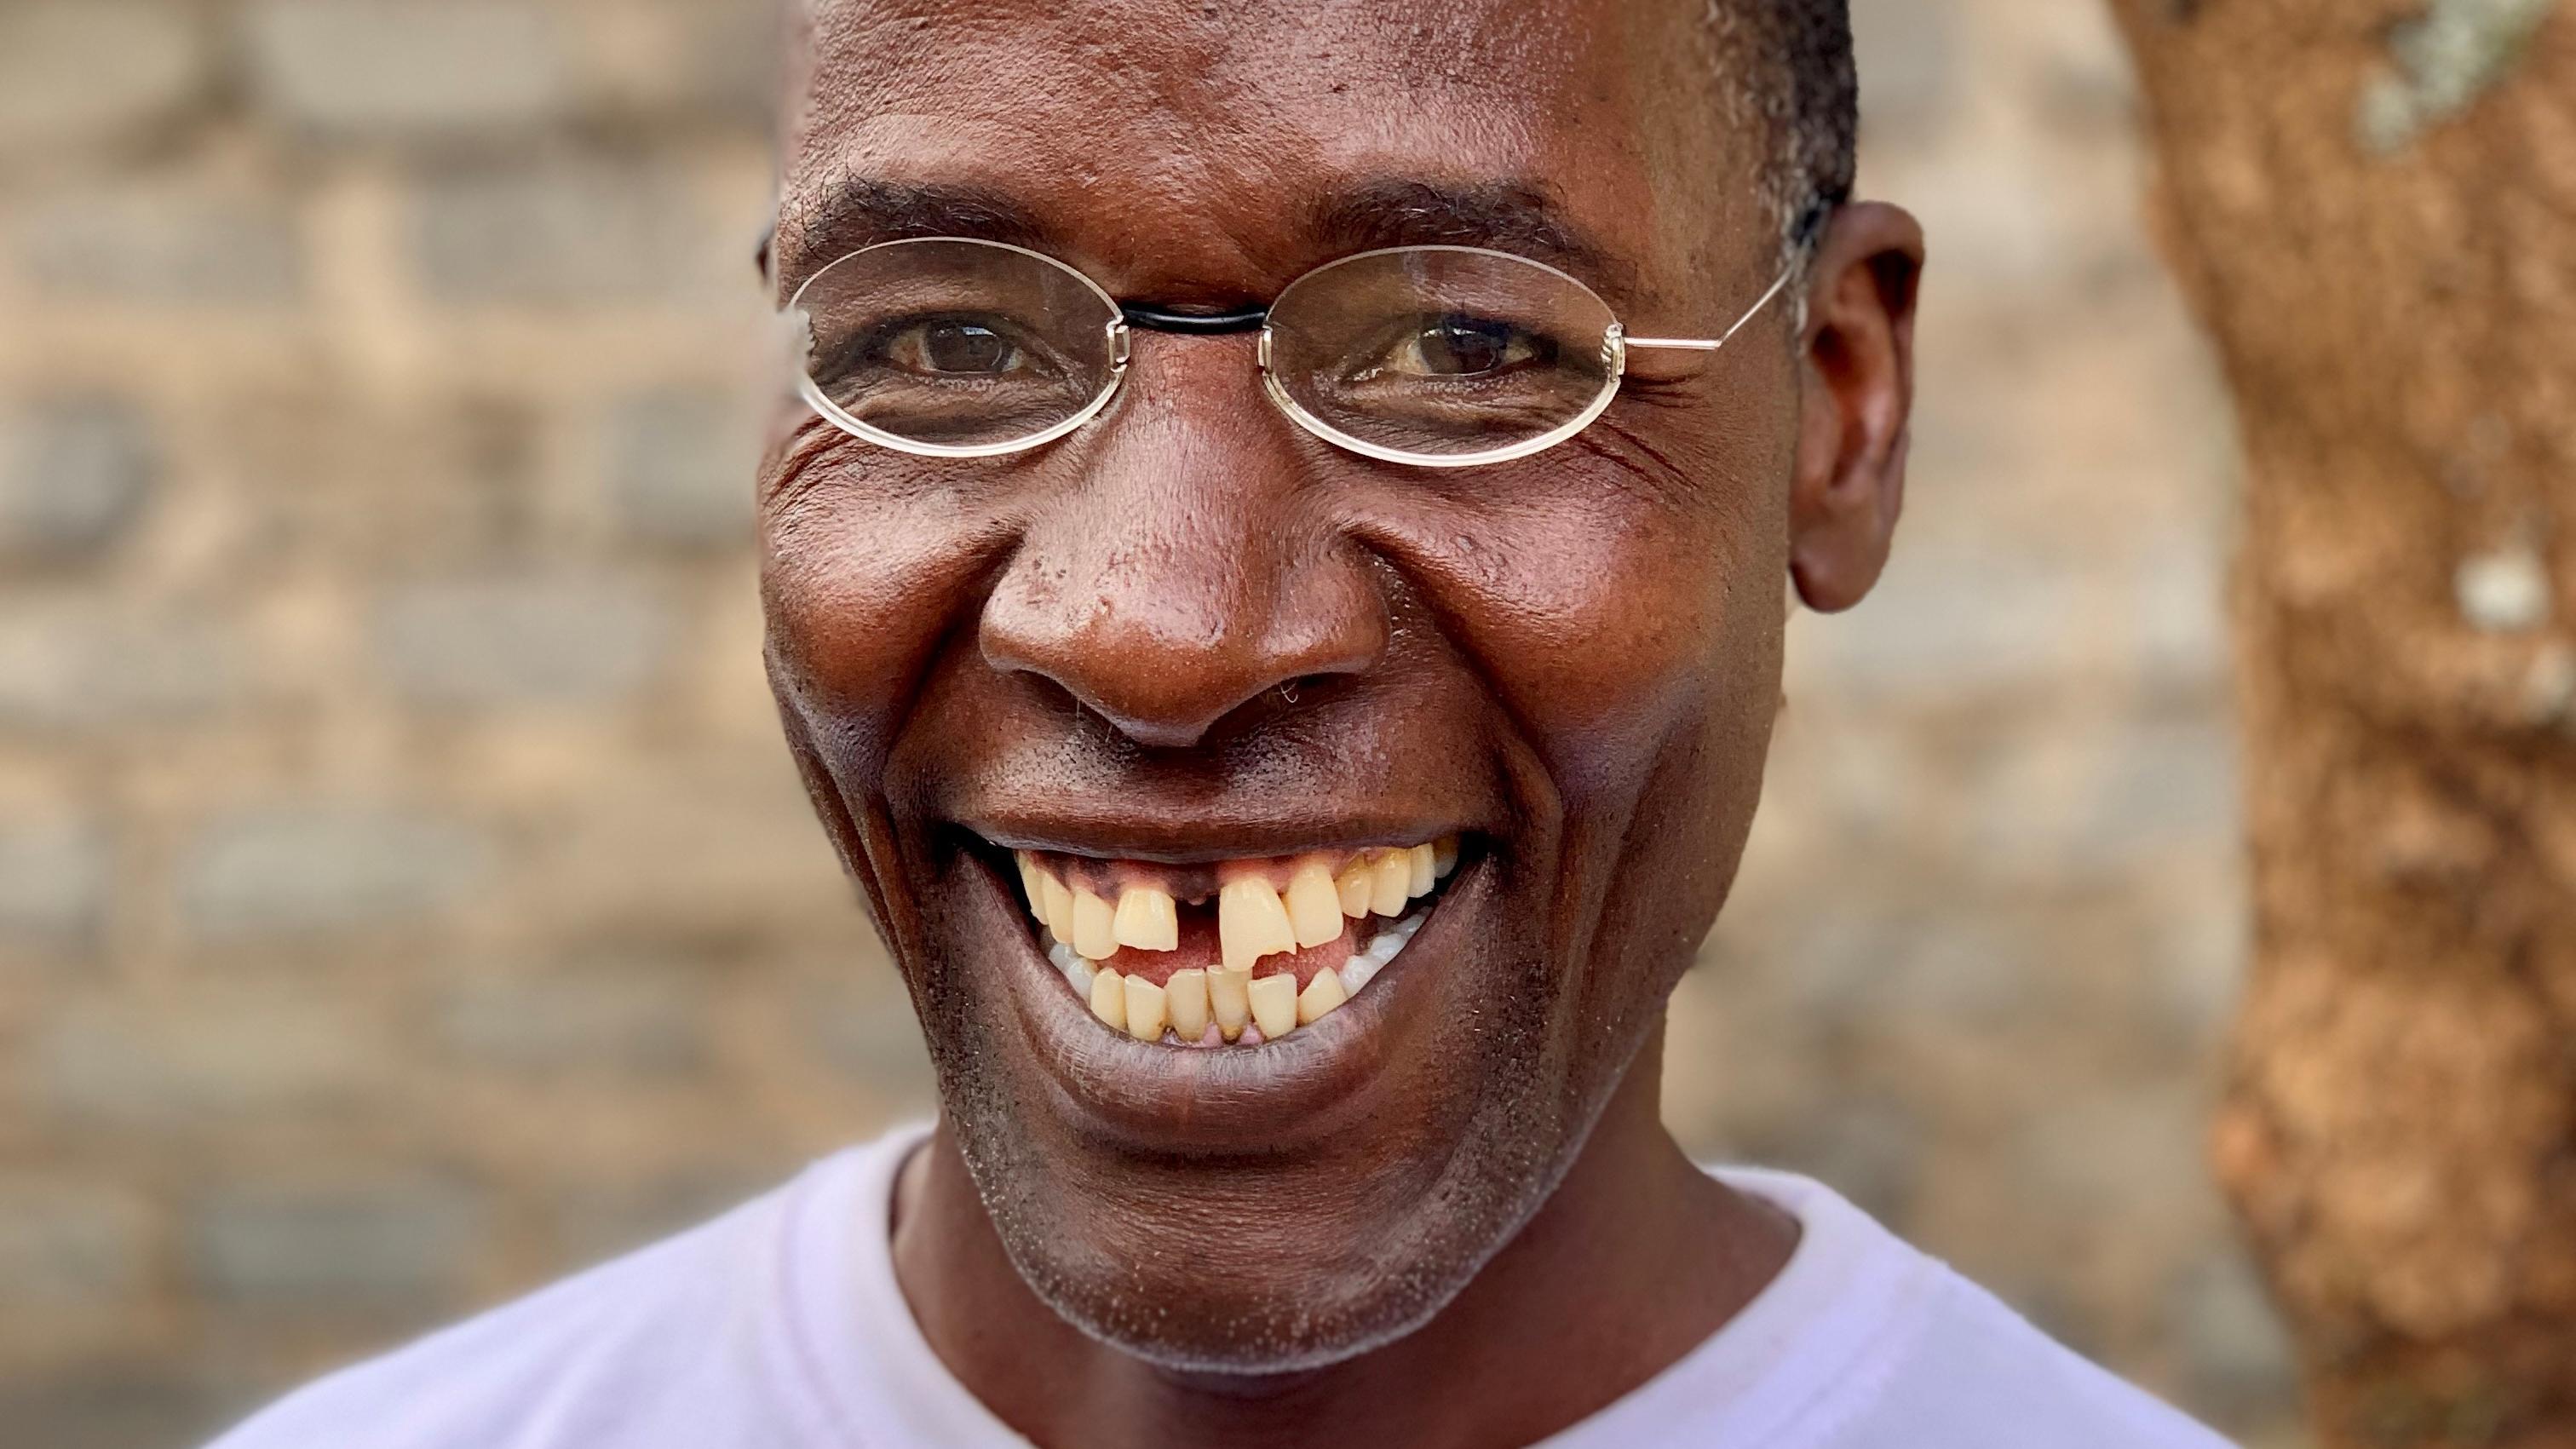 Kenyan man laughing in front of tree